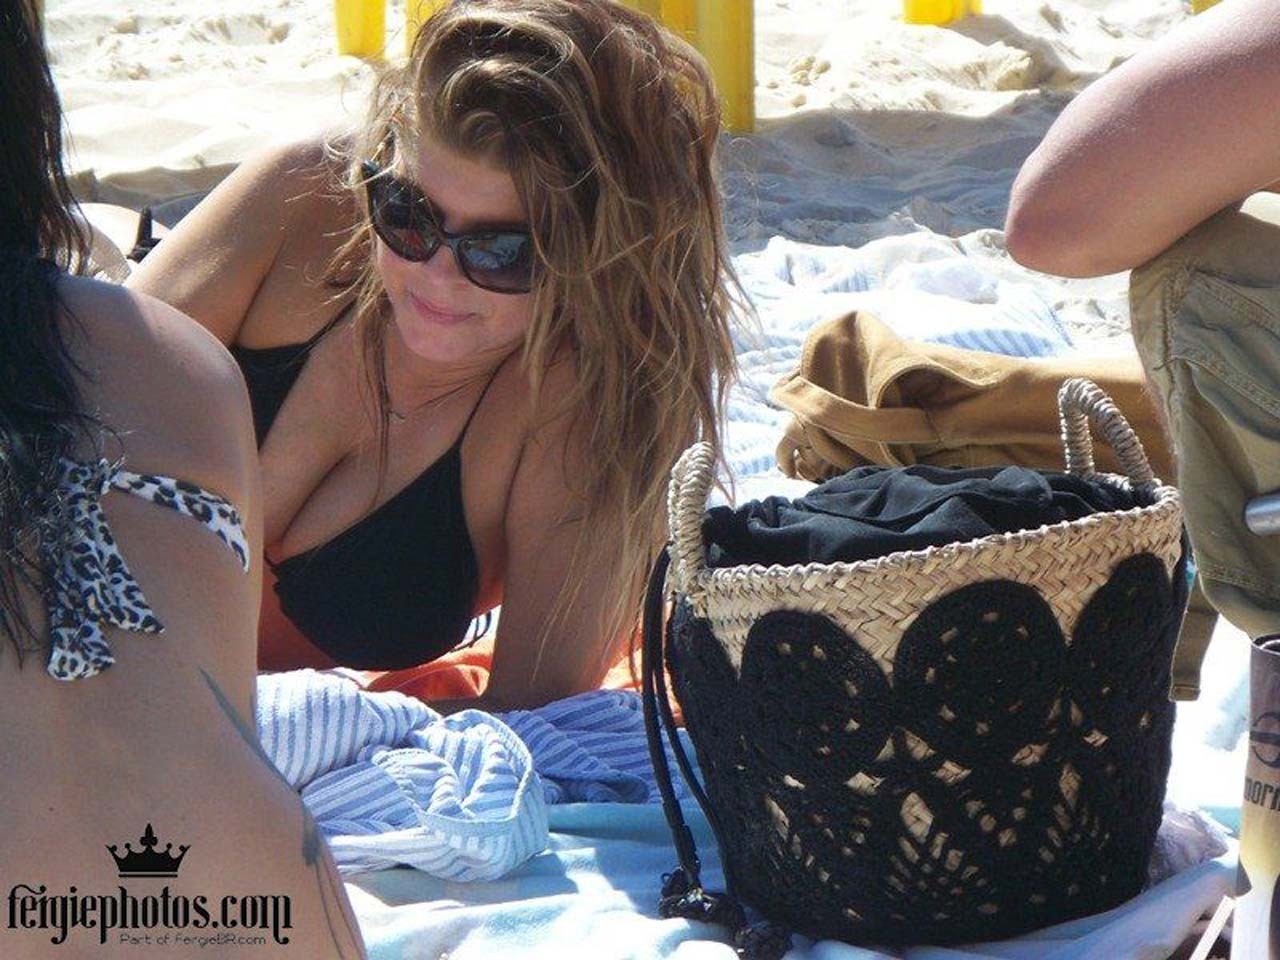 Stacy fergie ferguson exposant son corps sexy et son cul chaud en string sur la plage
 #75308682